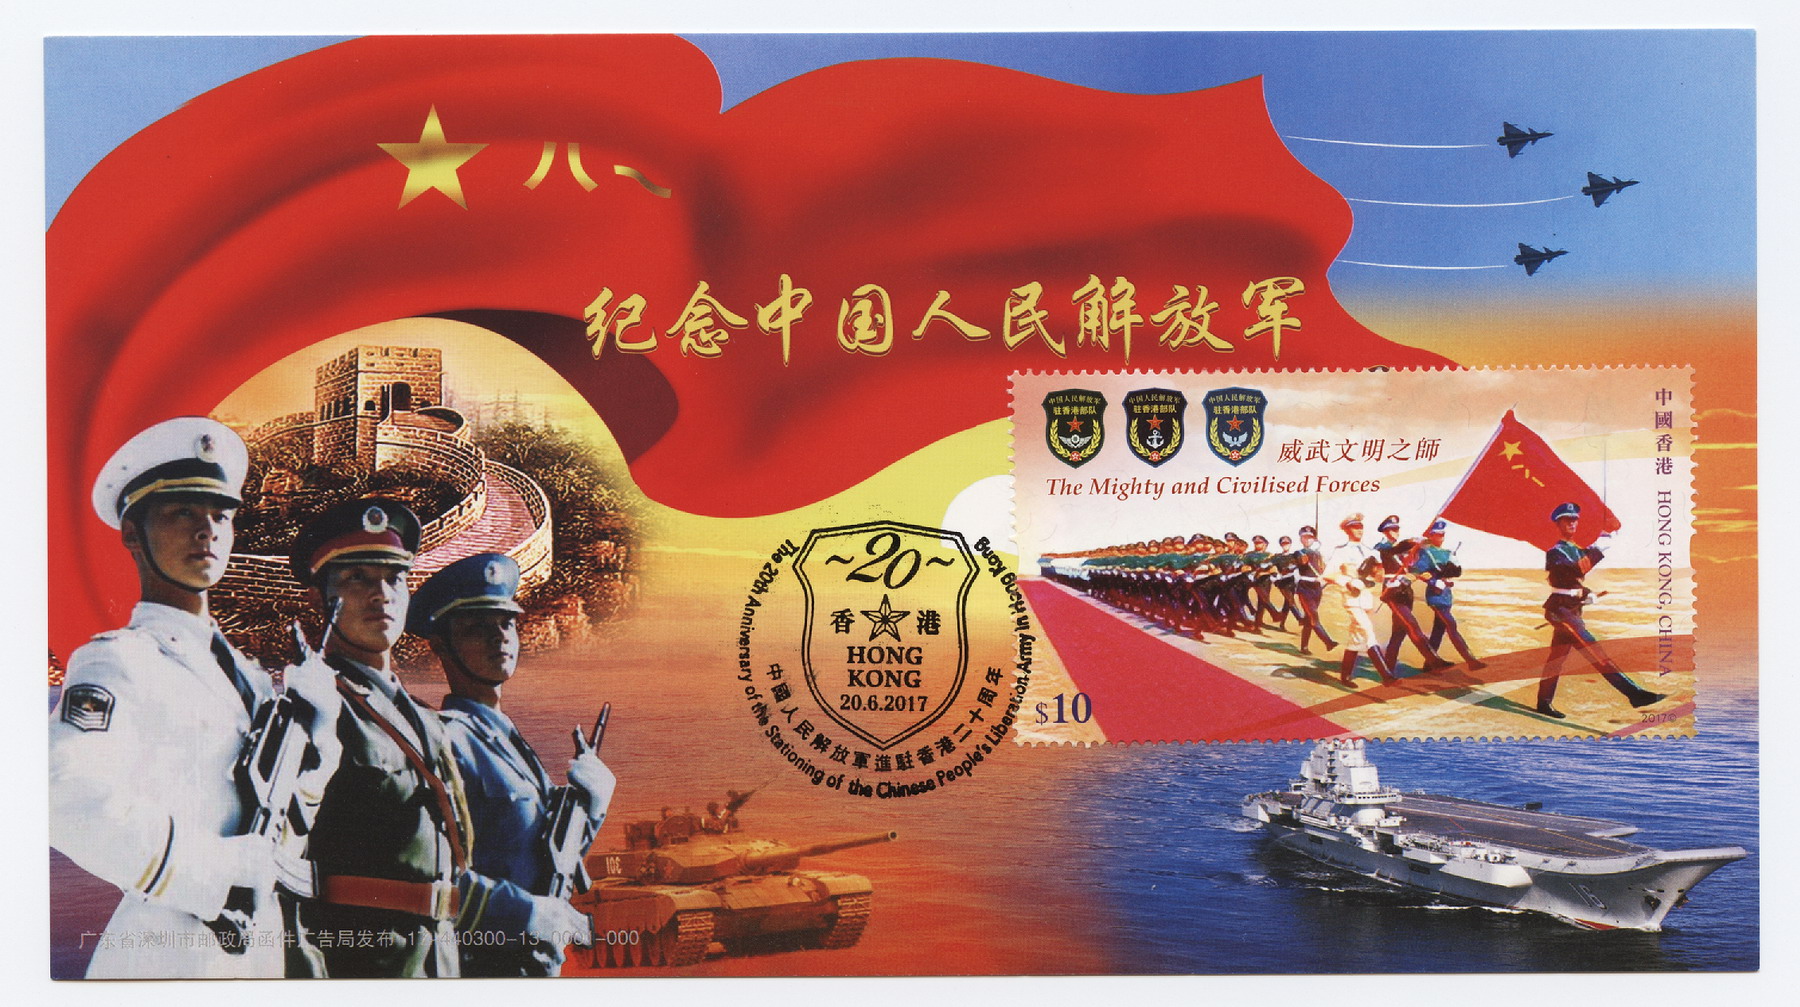 2017-6-20 中国人民解放军进驻香港20周年-3_resize.jpg